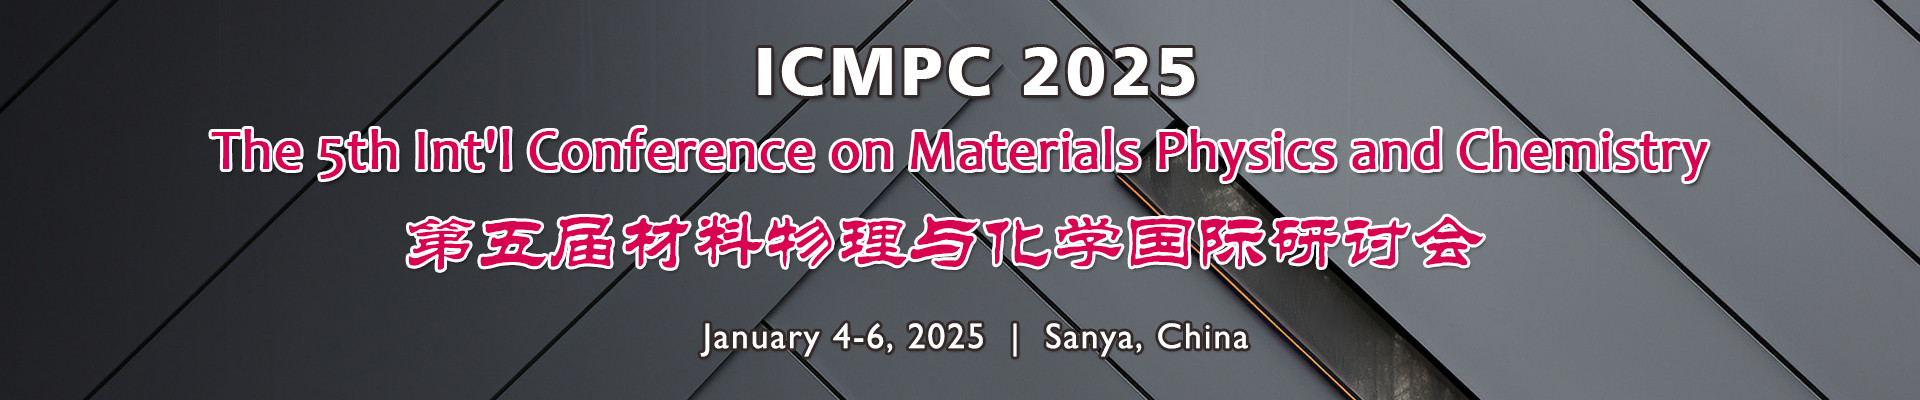 第五届材料物理与化学国际研讨会(ICMPC 2025)